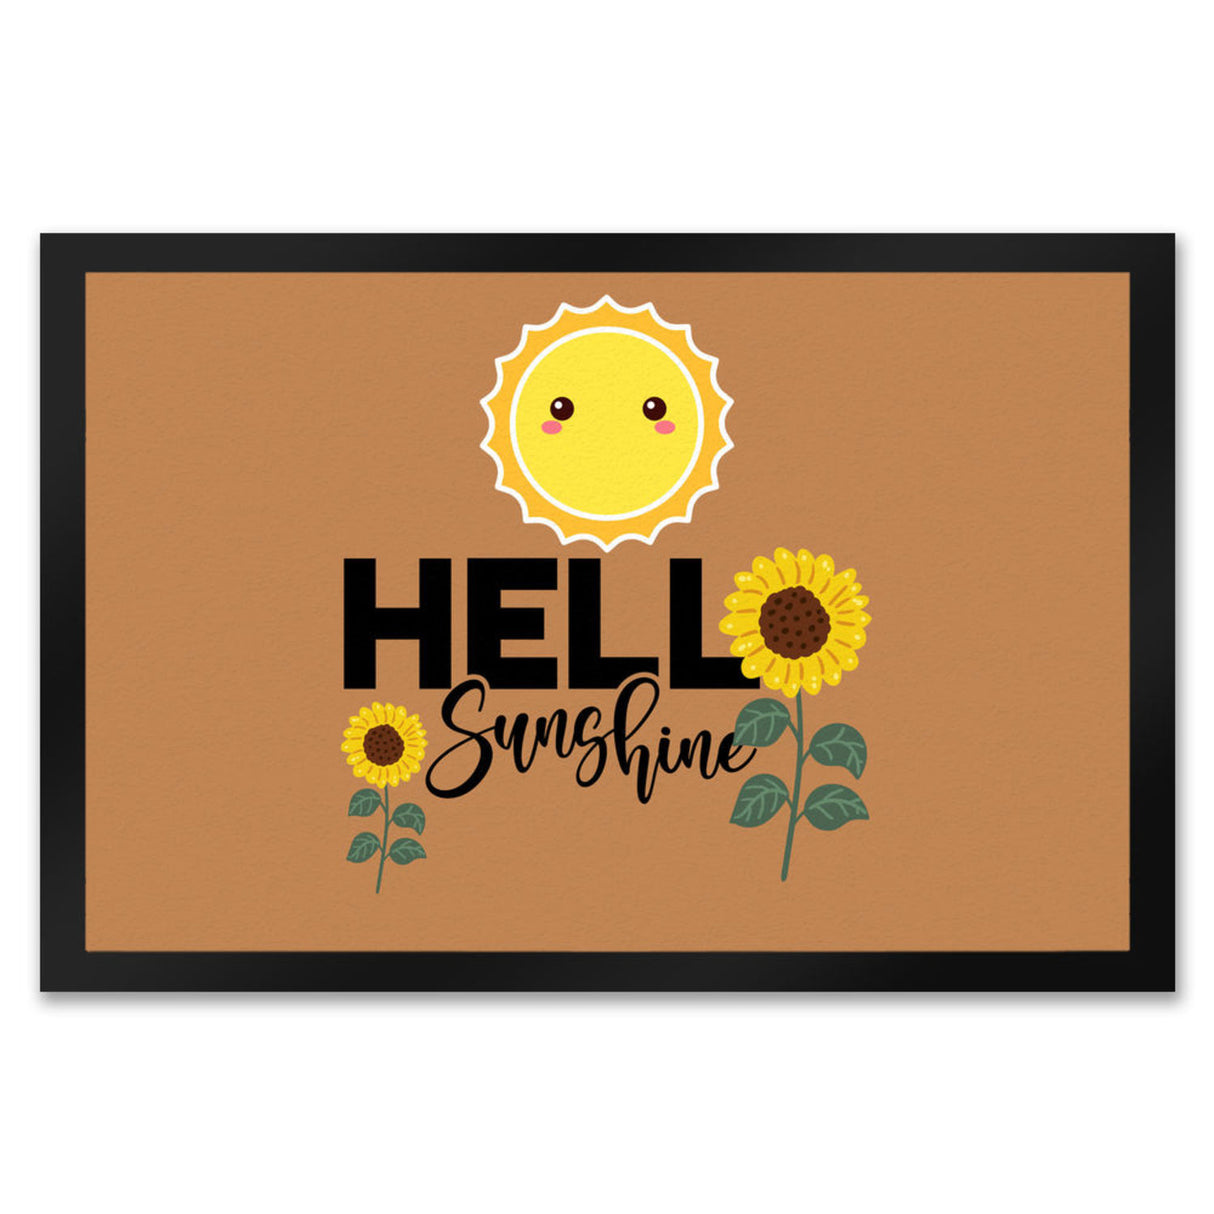 Gute Laune Fußmatte in 35x50 cm in hellblau mit Spruch Hello Sunshine